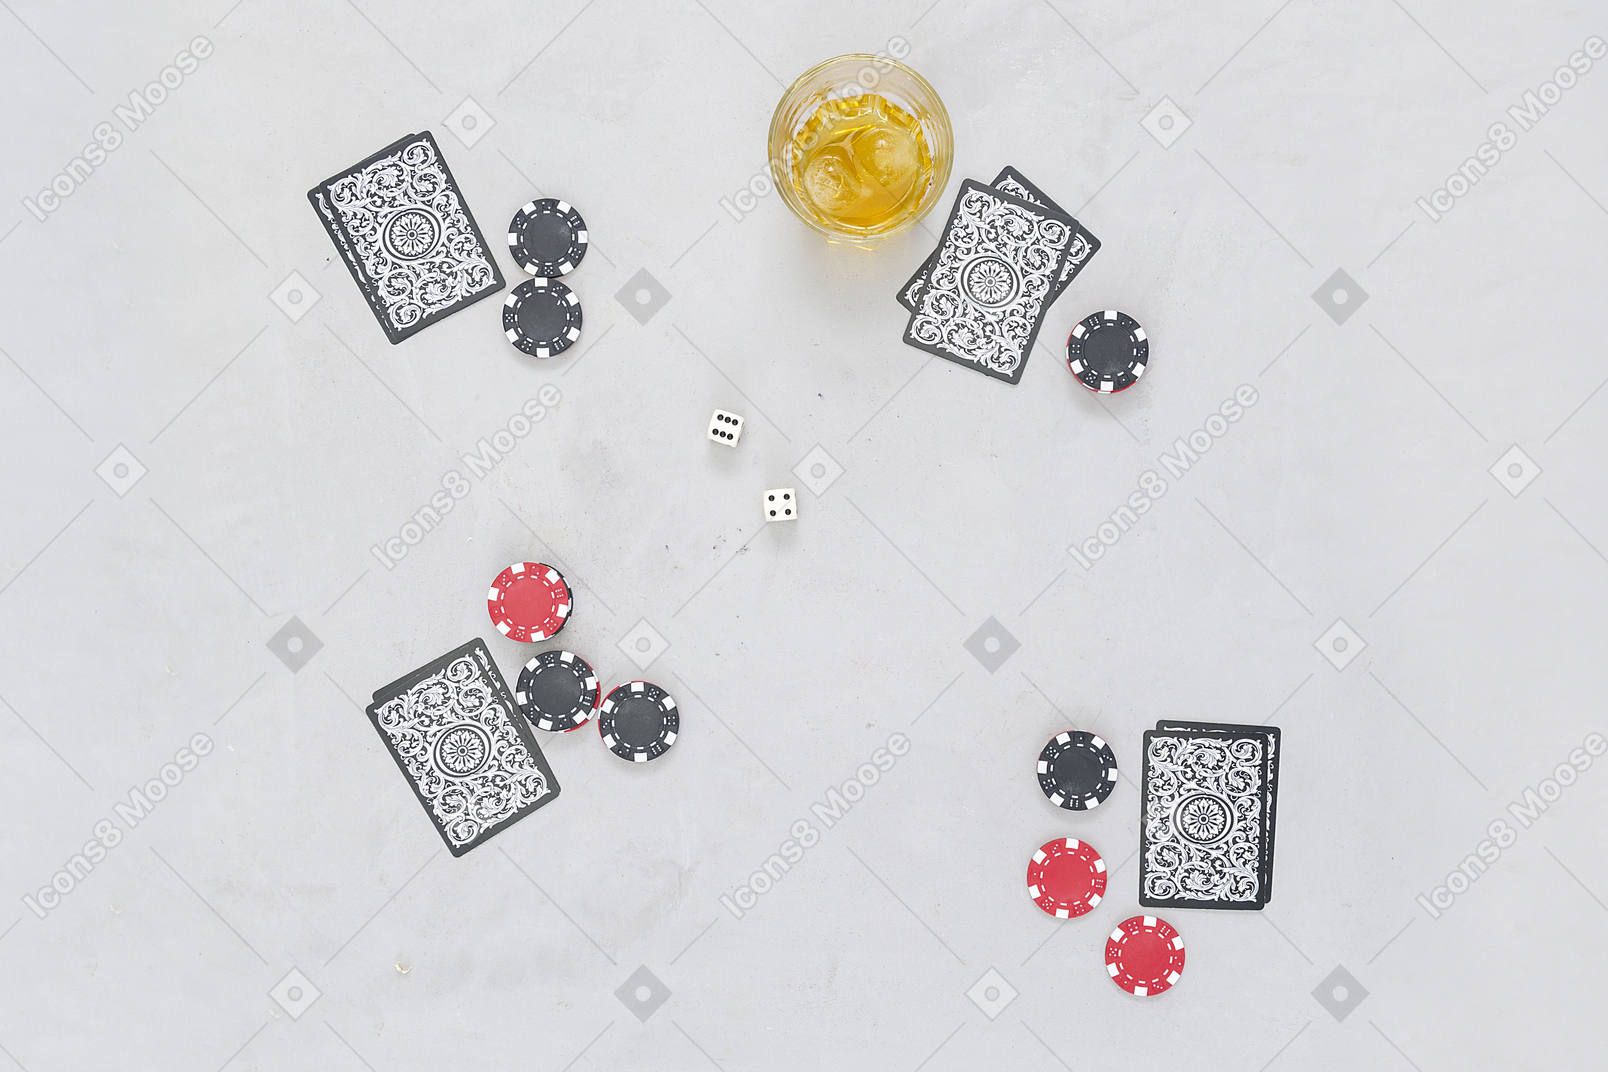 I giochi di carte da tavola si abbinano bene alle bevande alcoliche